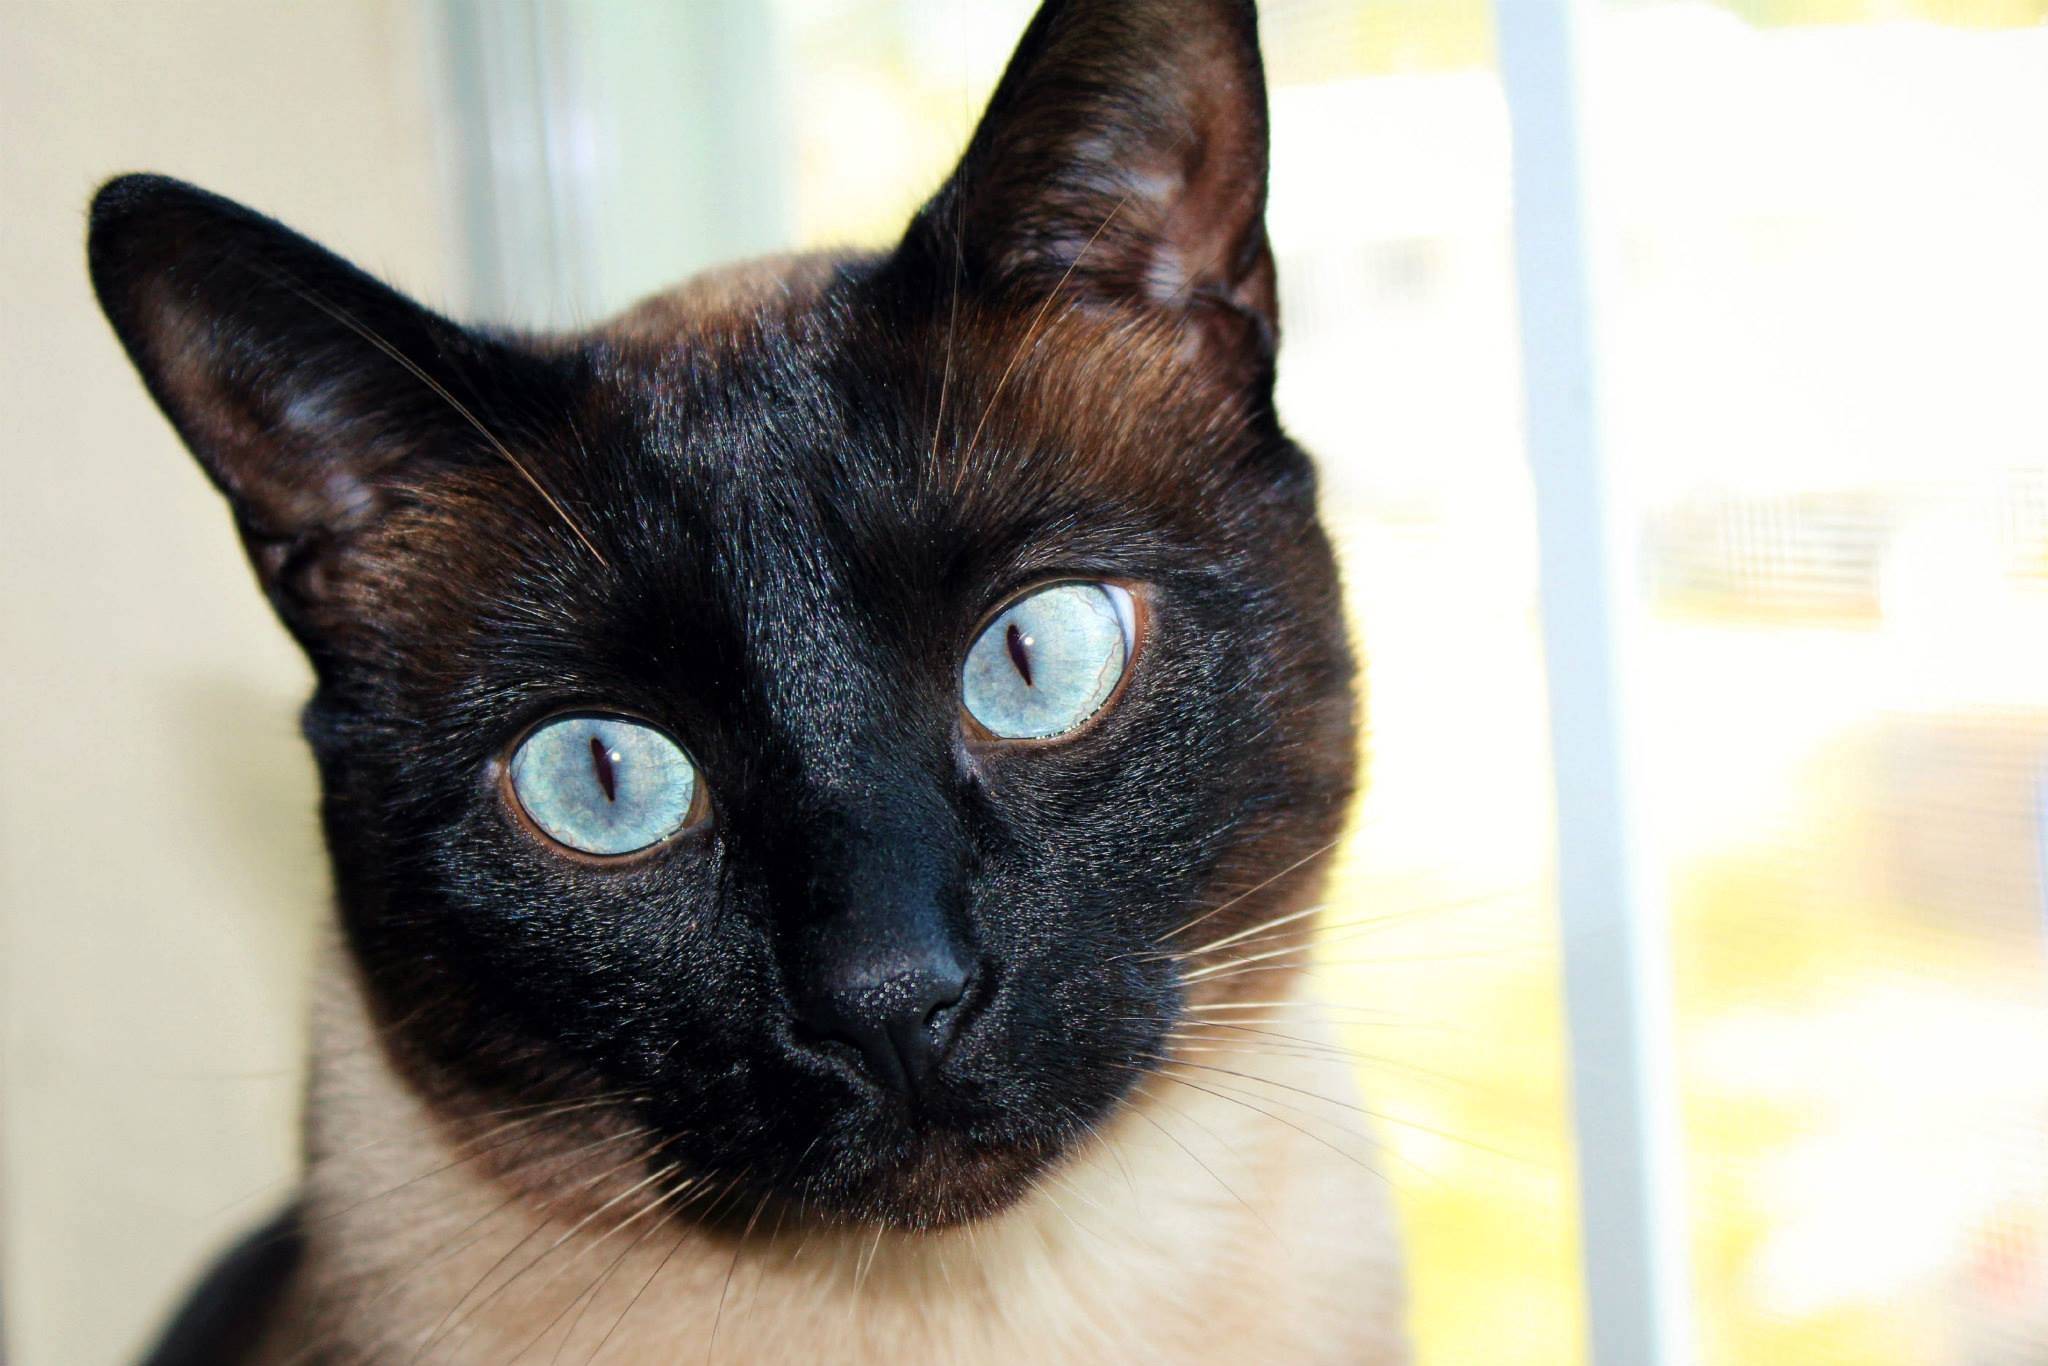 Сиамская кошка: описание внешности и характера породы, уход за питомцем и его содержание, выбор котёнка, отзывы владельцев, фото кота